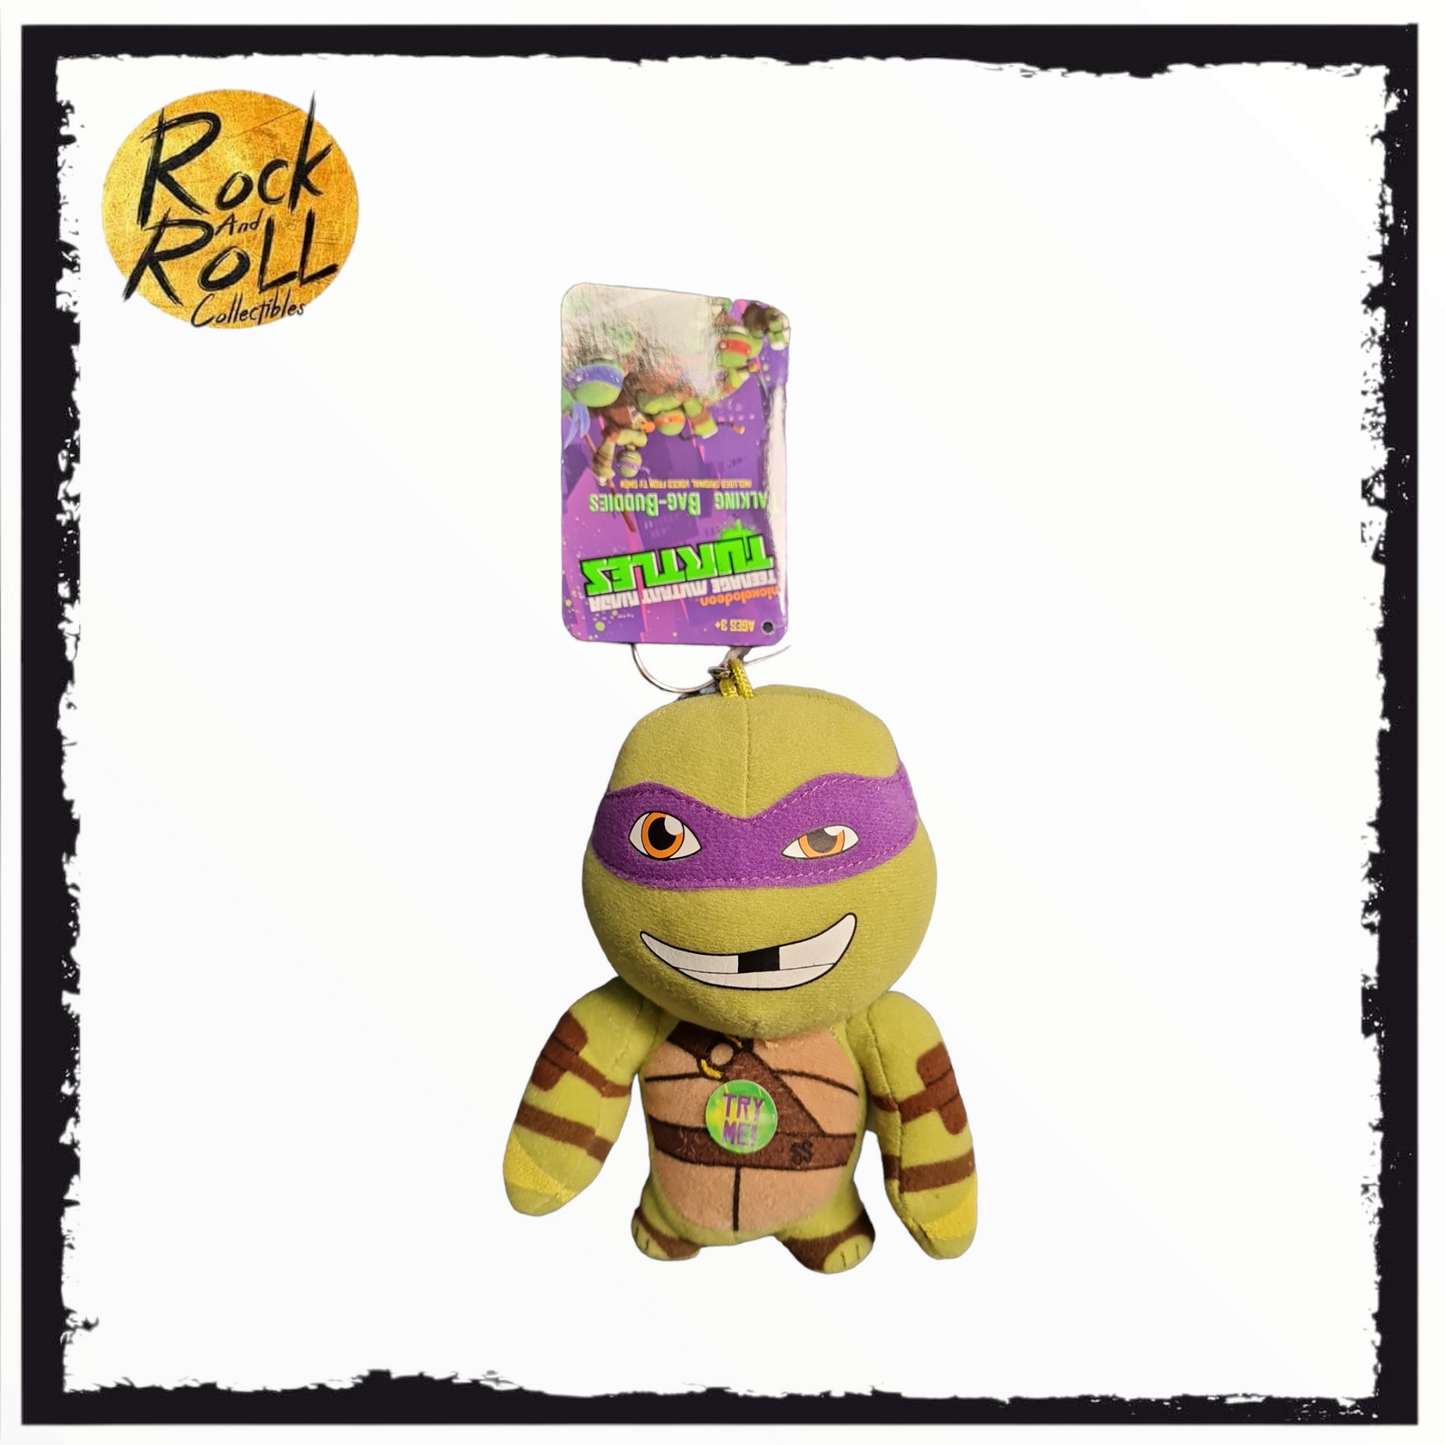 Teenage Mutant Ninja Turtles Talking Bag Buddies - Donatello